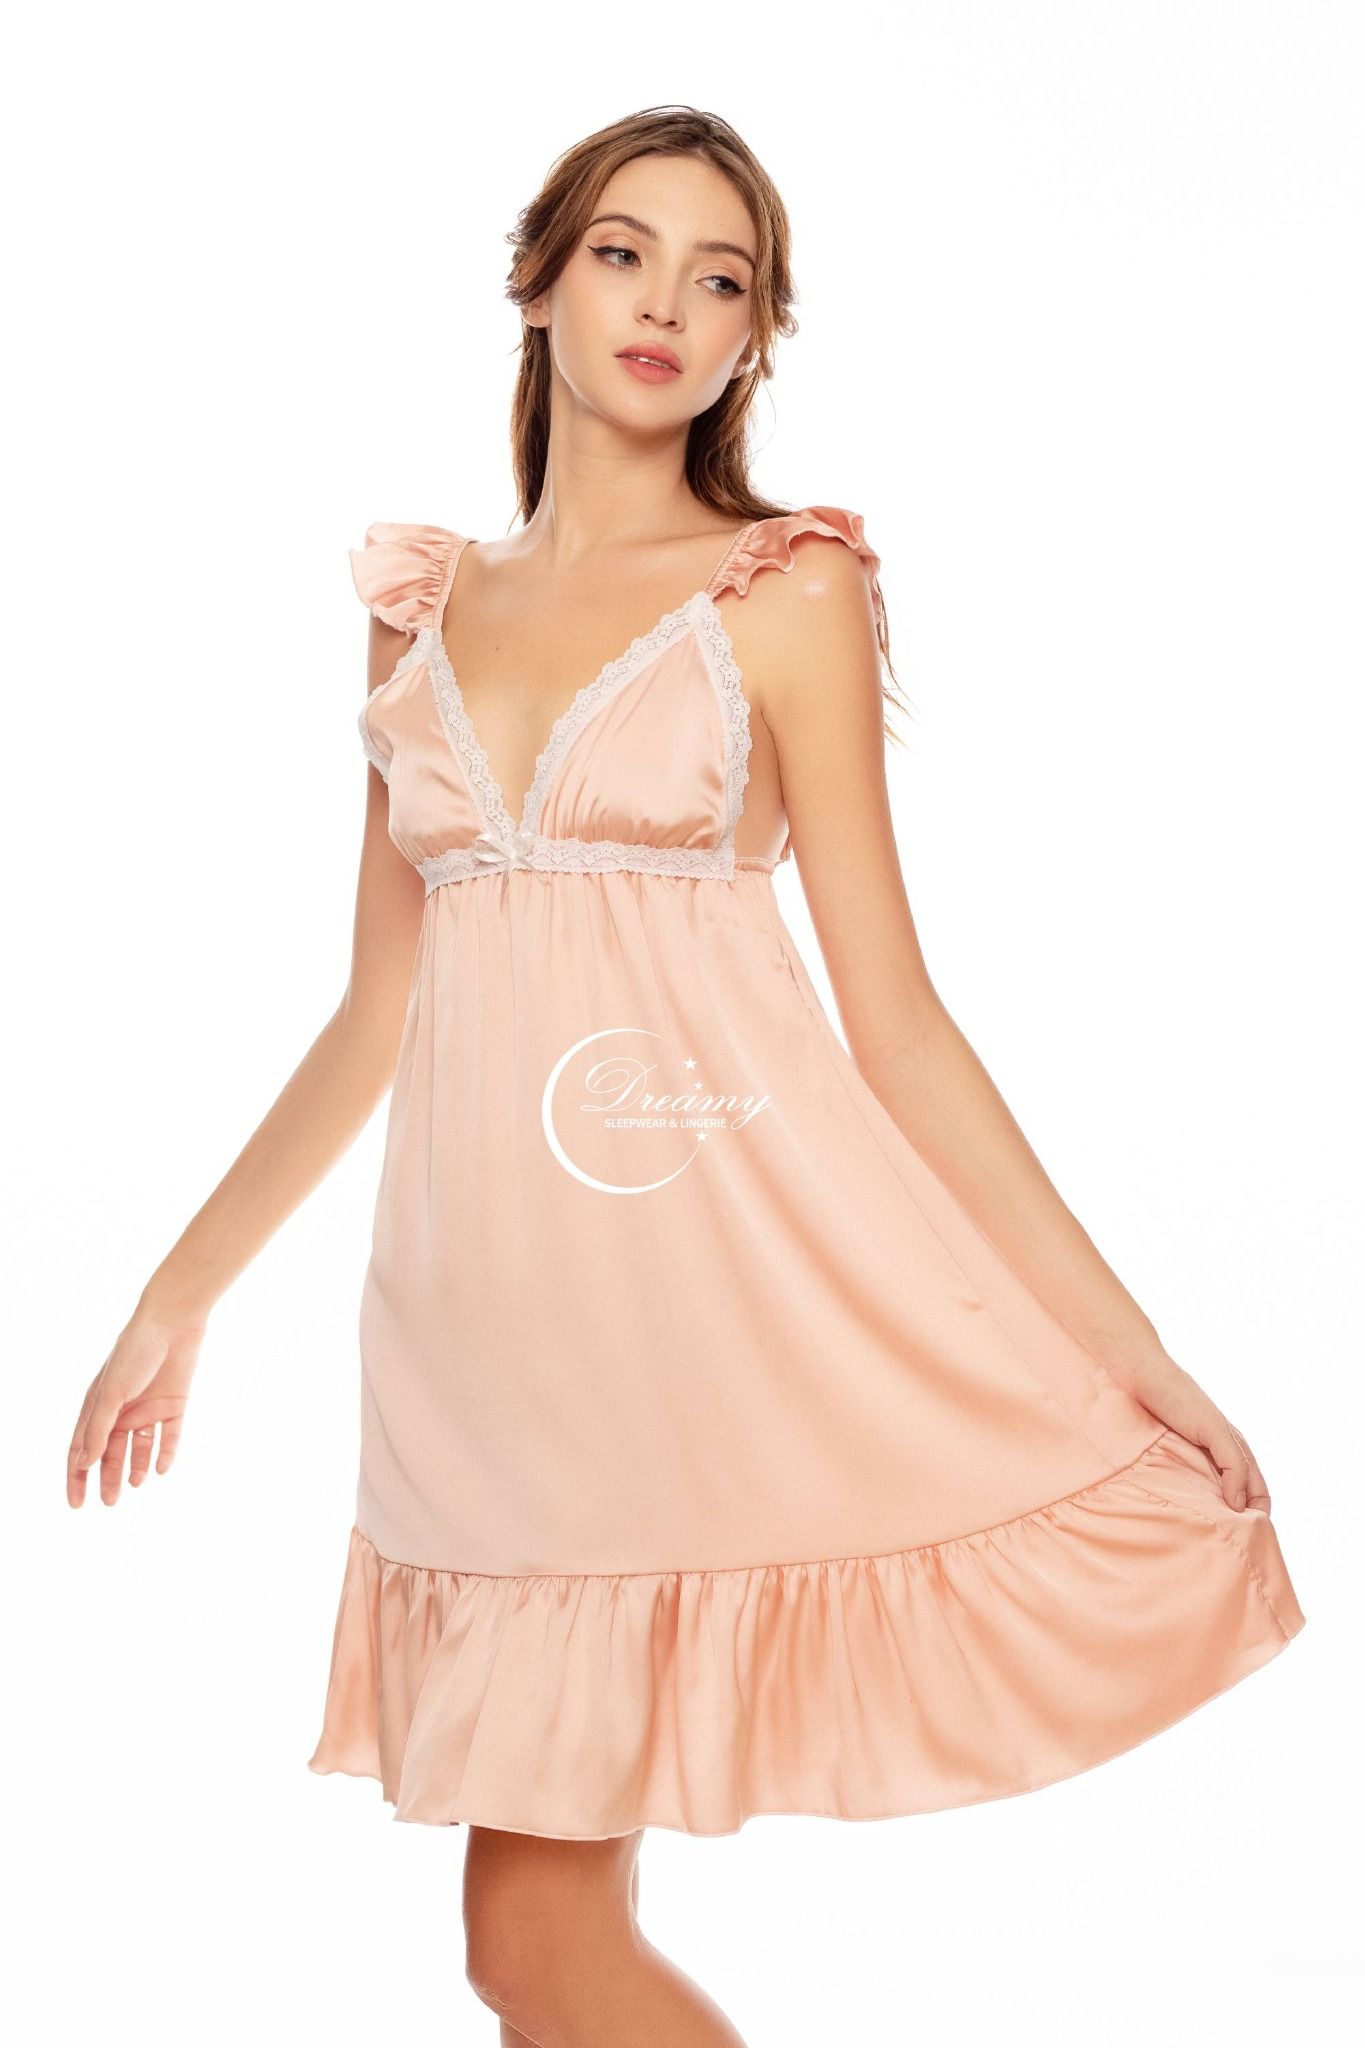  Dreamy - VX19 - Váy ngủ lụa cao cấp, váy ngủ nữ dáng xòe tay cánh tiên phối bèo có 3 màu xanh bơ, nude đồng và hồng pastel 